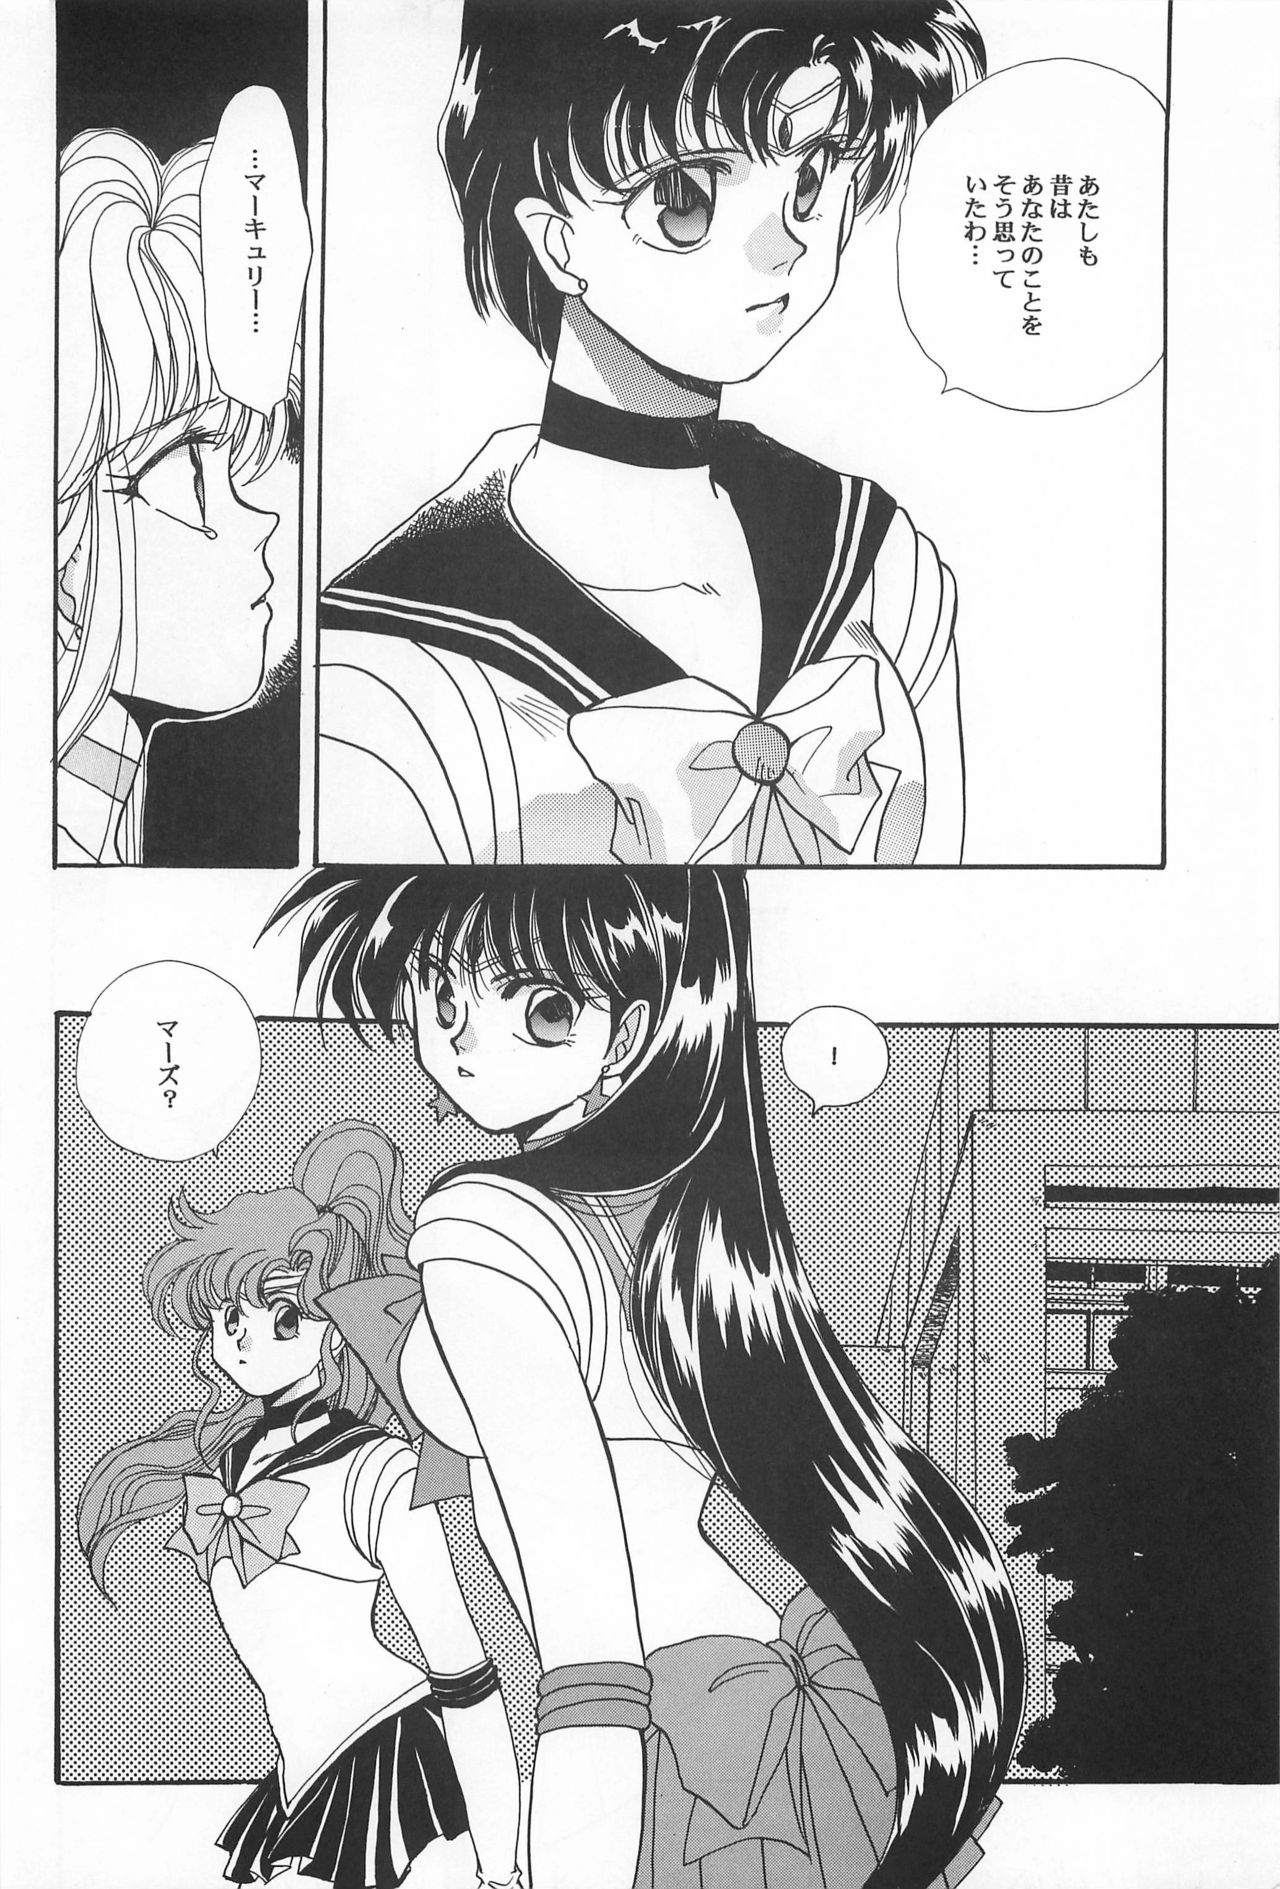 [Hello World (Muttri Moony)] Kaze no You ni Yume no You ni - Sailor Moon Collection (Sailor Moon) 141